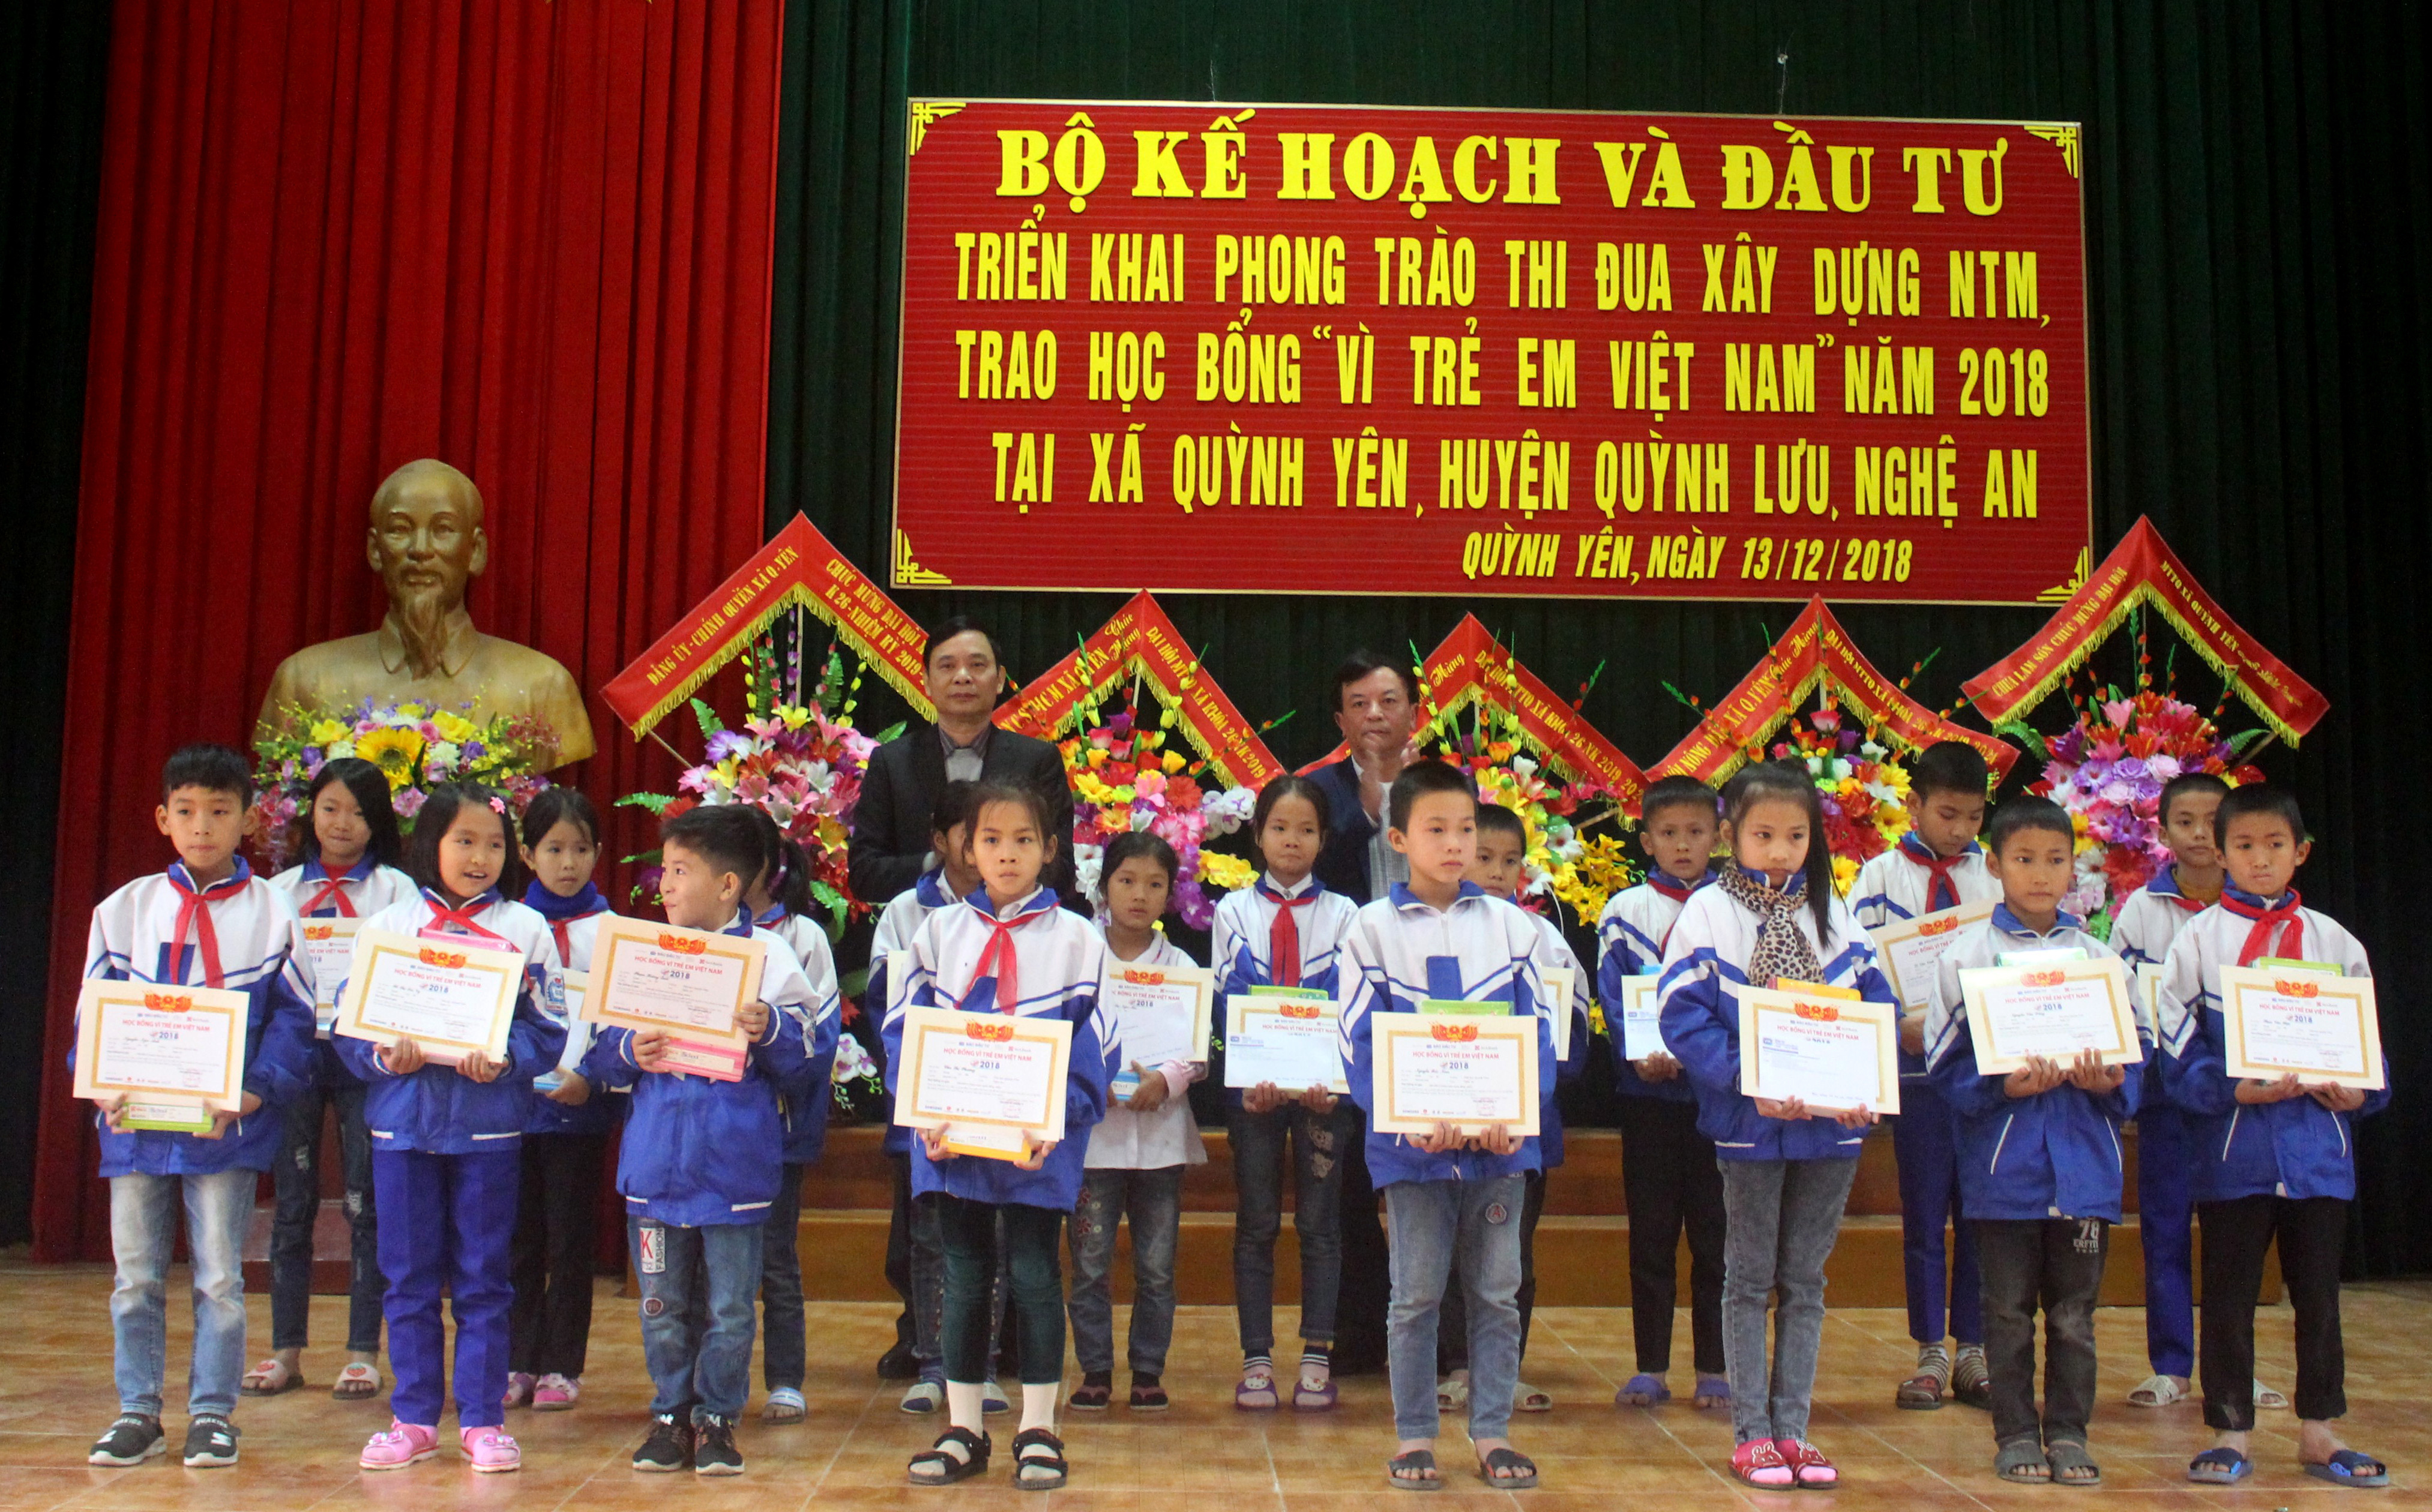 Trao học bổng cho các em học sinh xã Quỳnh Yên, Quỳnh Lưu. Ảnh: 